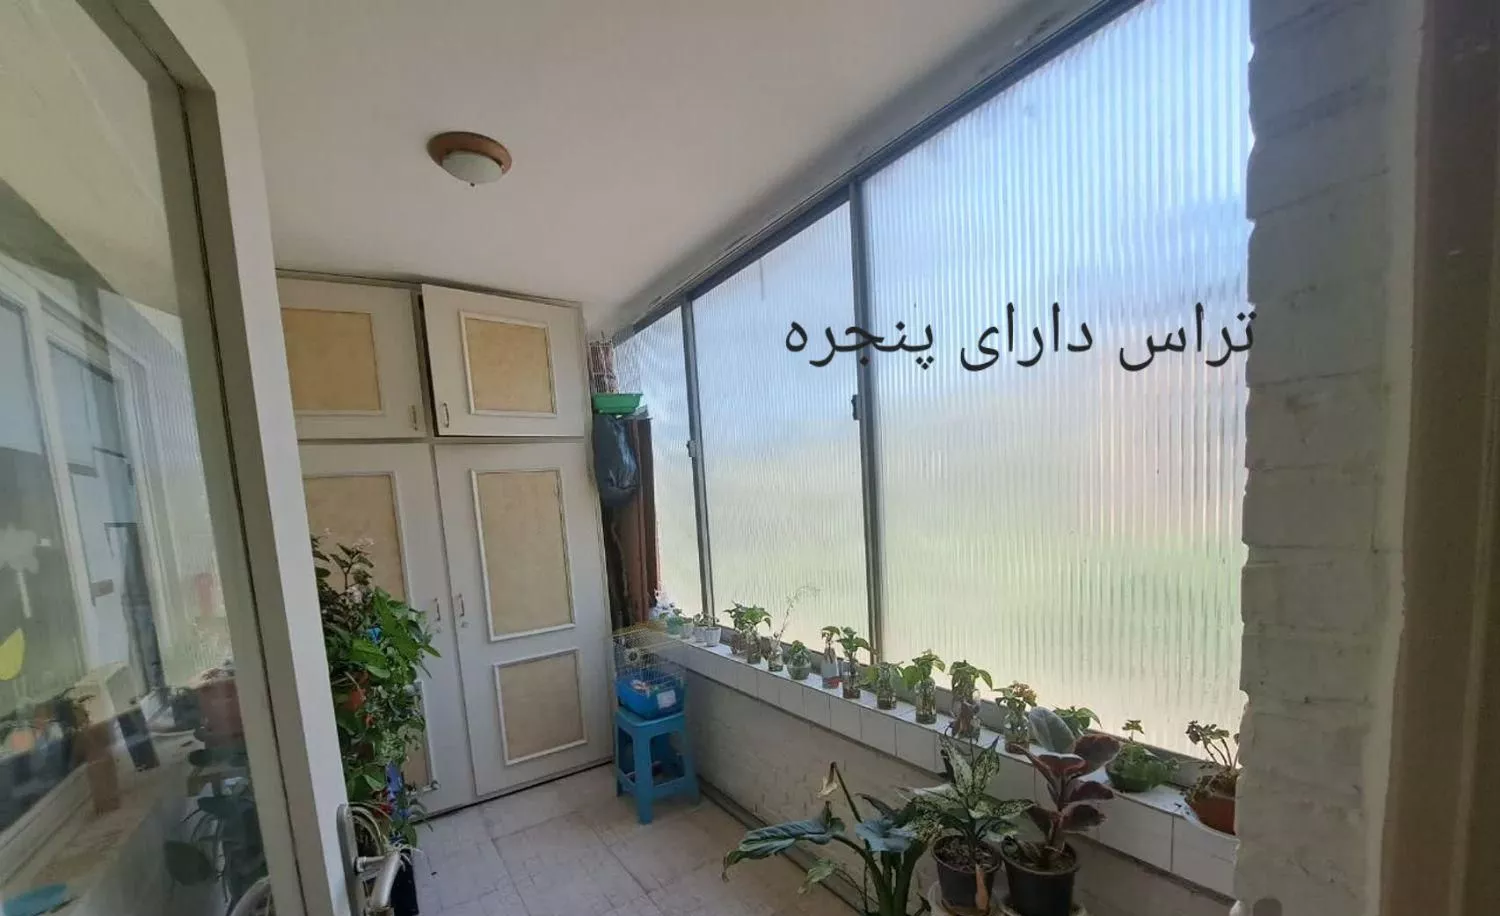 آپارتمان سه کله نور در بام اصفهان قابل معاوضه